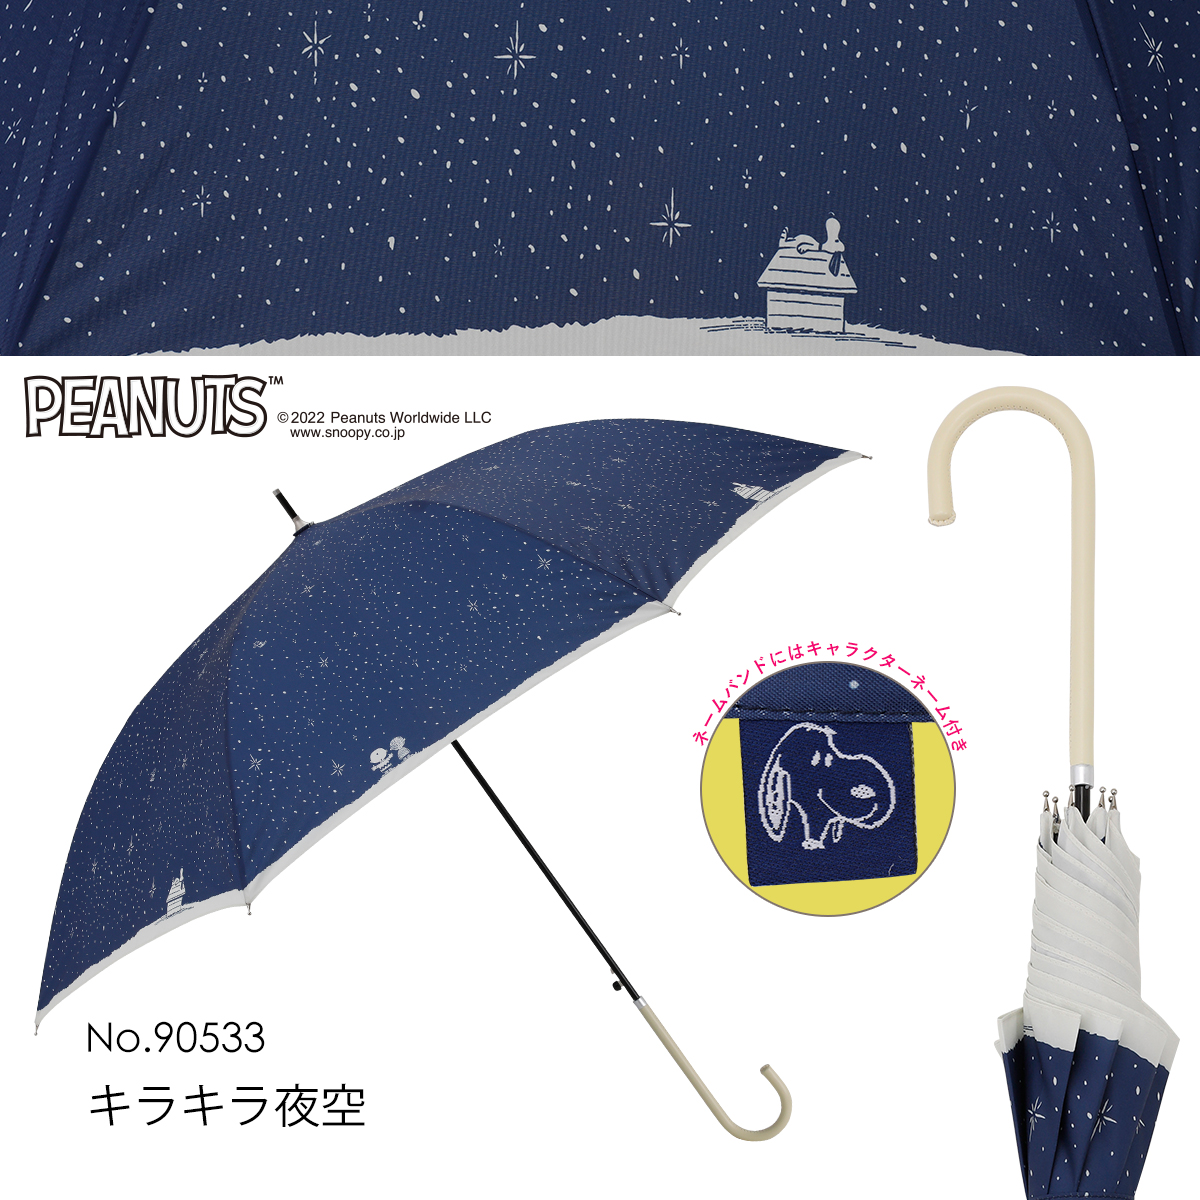 雨傘【スヌーピー/キラキラ夜空】